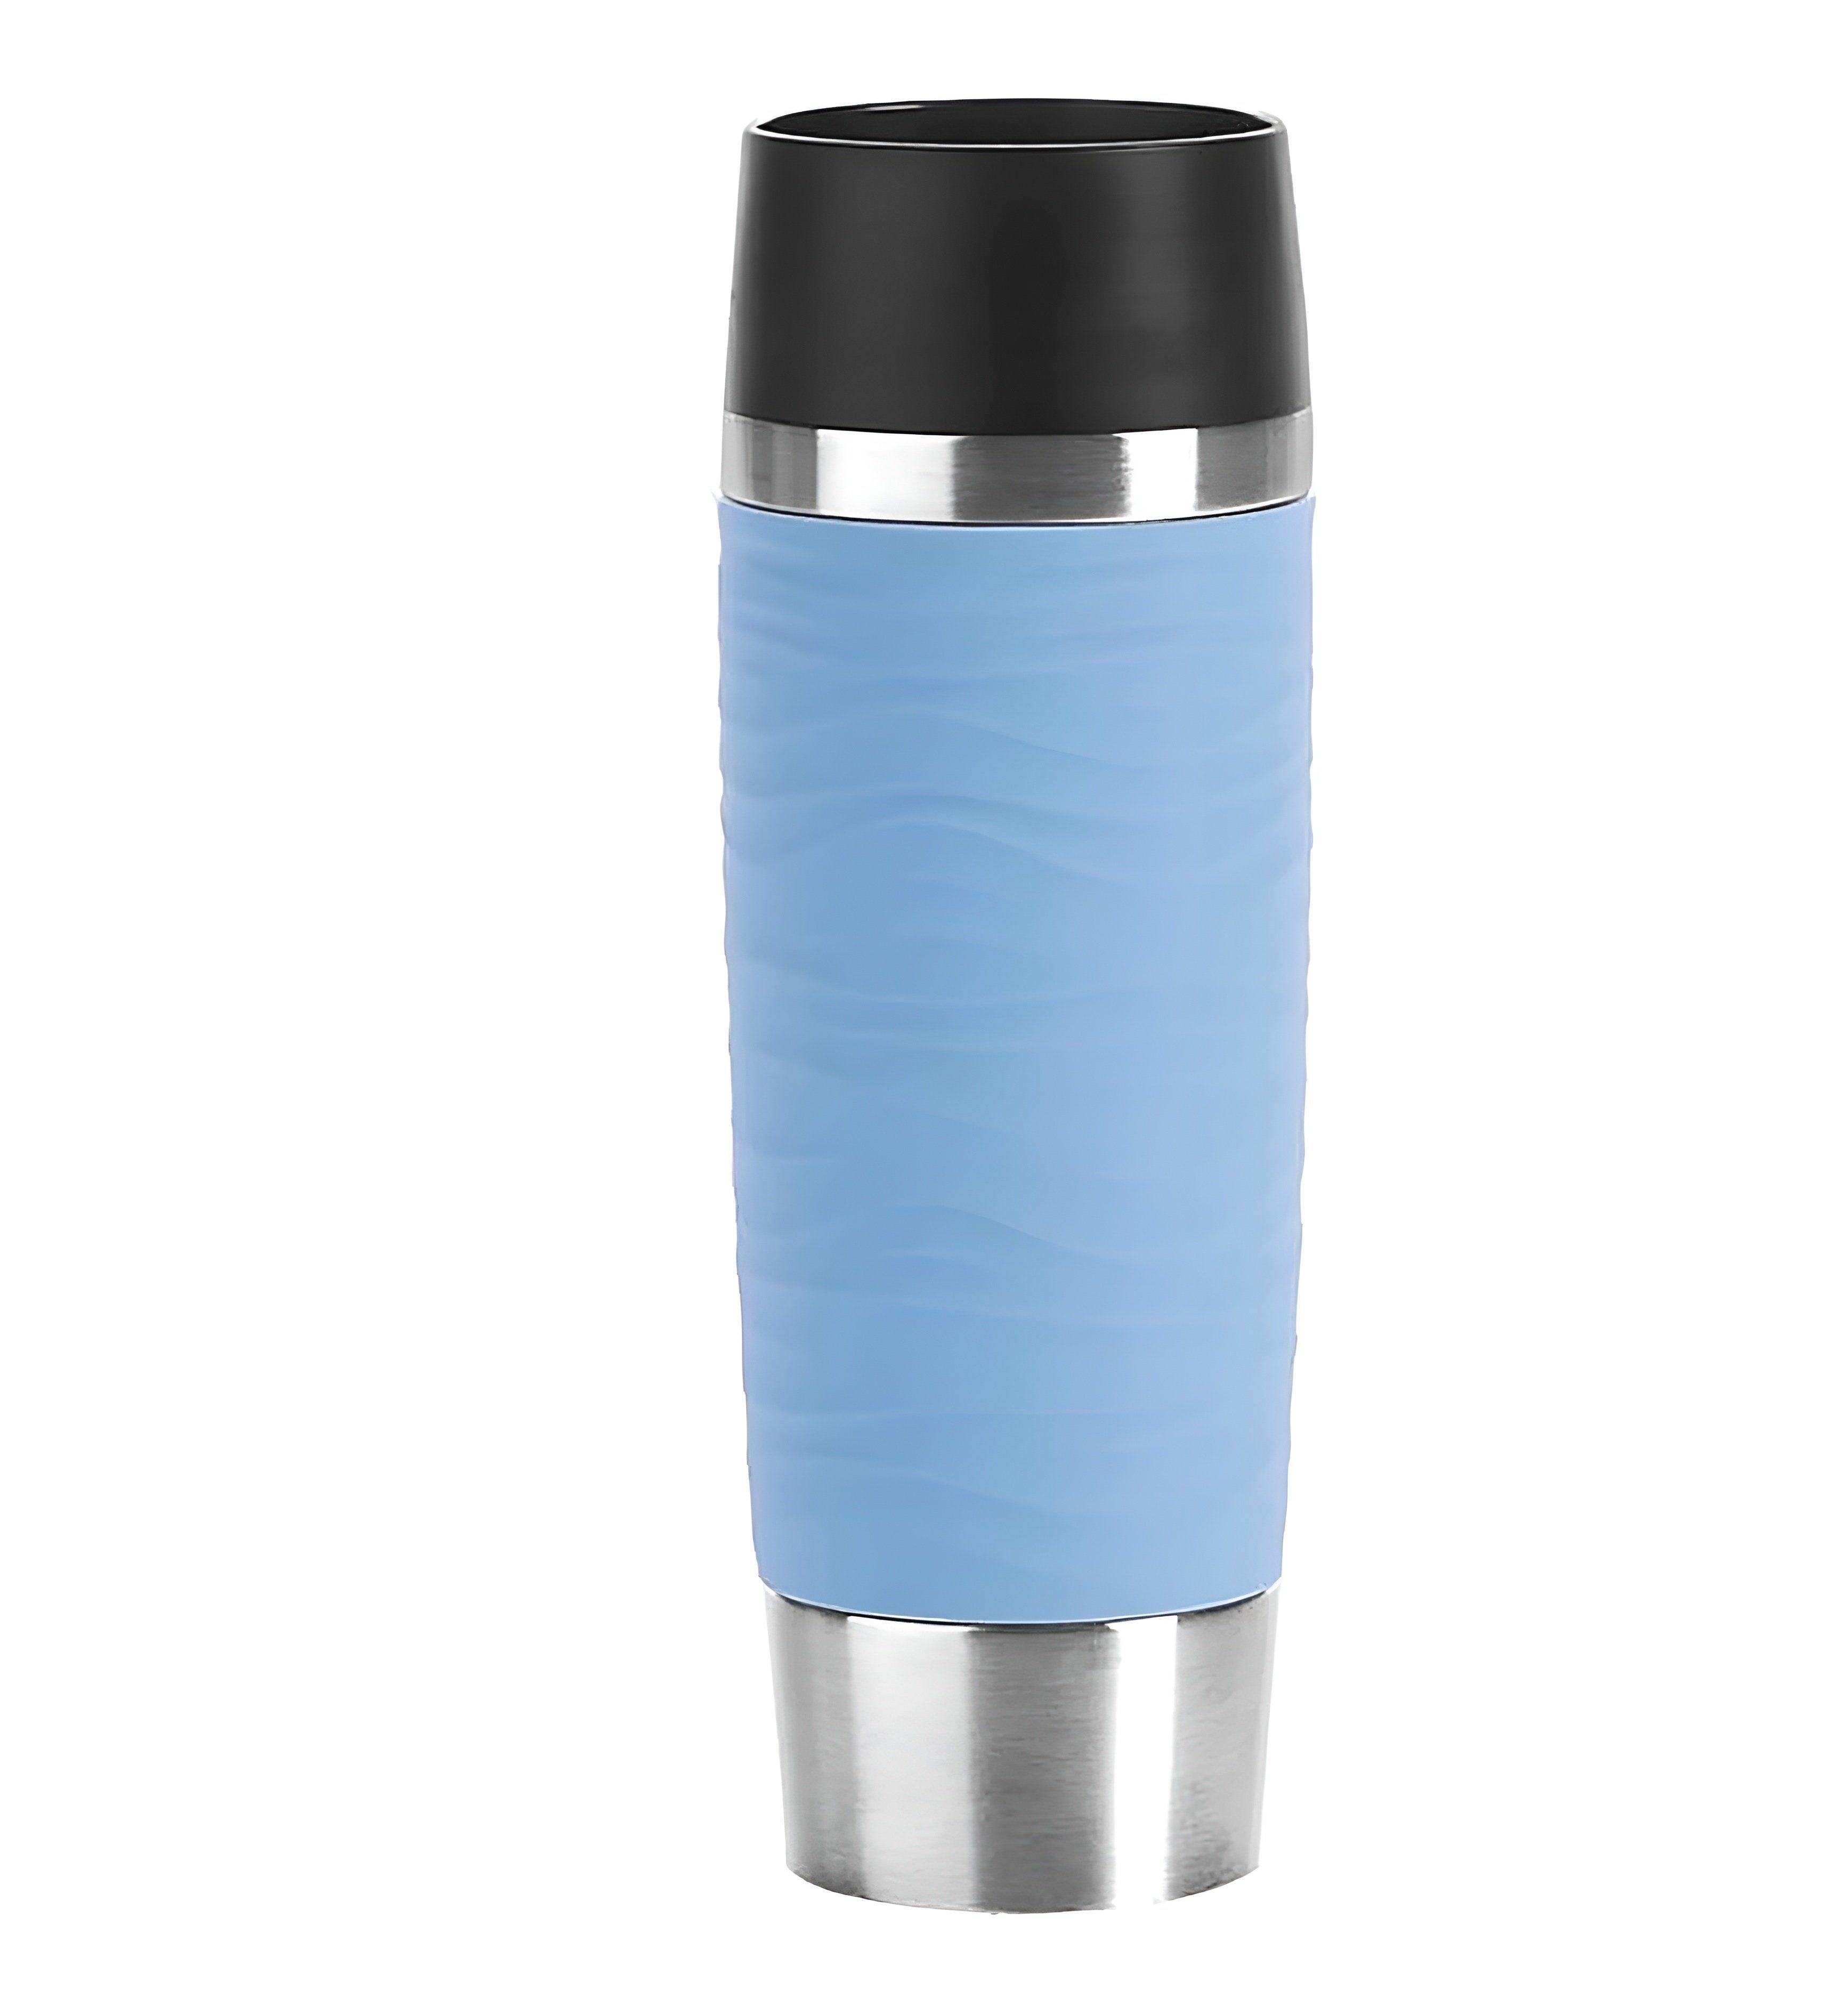 Emsa Thermobecher Travel Mug Grande, 360°-Trinköffnung hält Getränke bis 4 / 8 Stunden, Edelstahl, Kunststoff, Silikon, Praktisches Geschenk, Nachhaltig, Hält 4-8h Hochwertige Materialien Blau